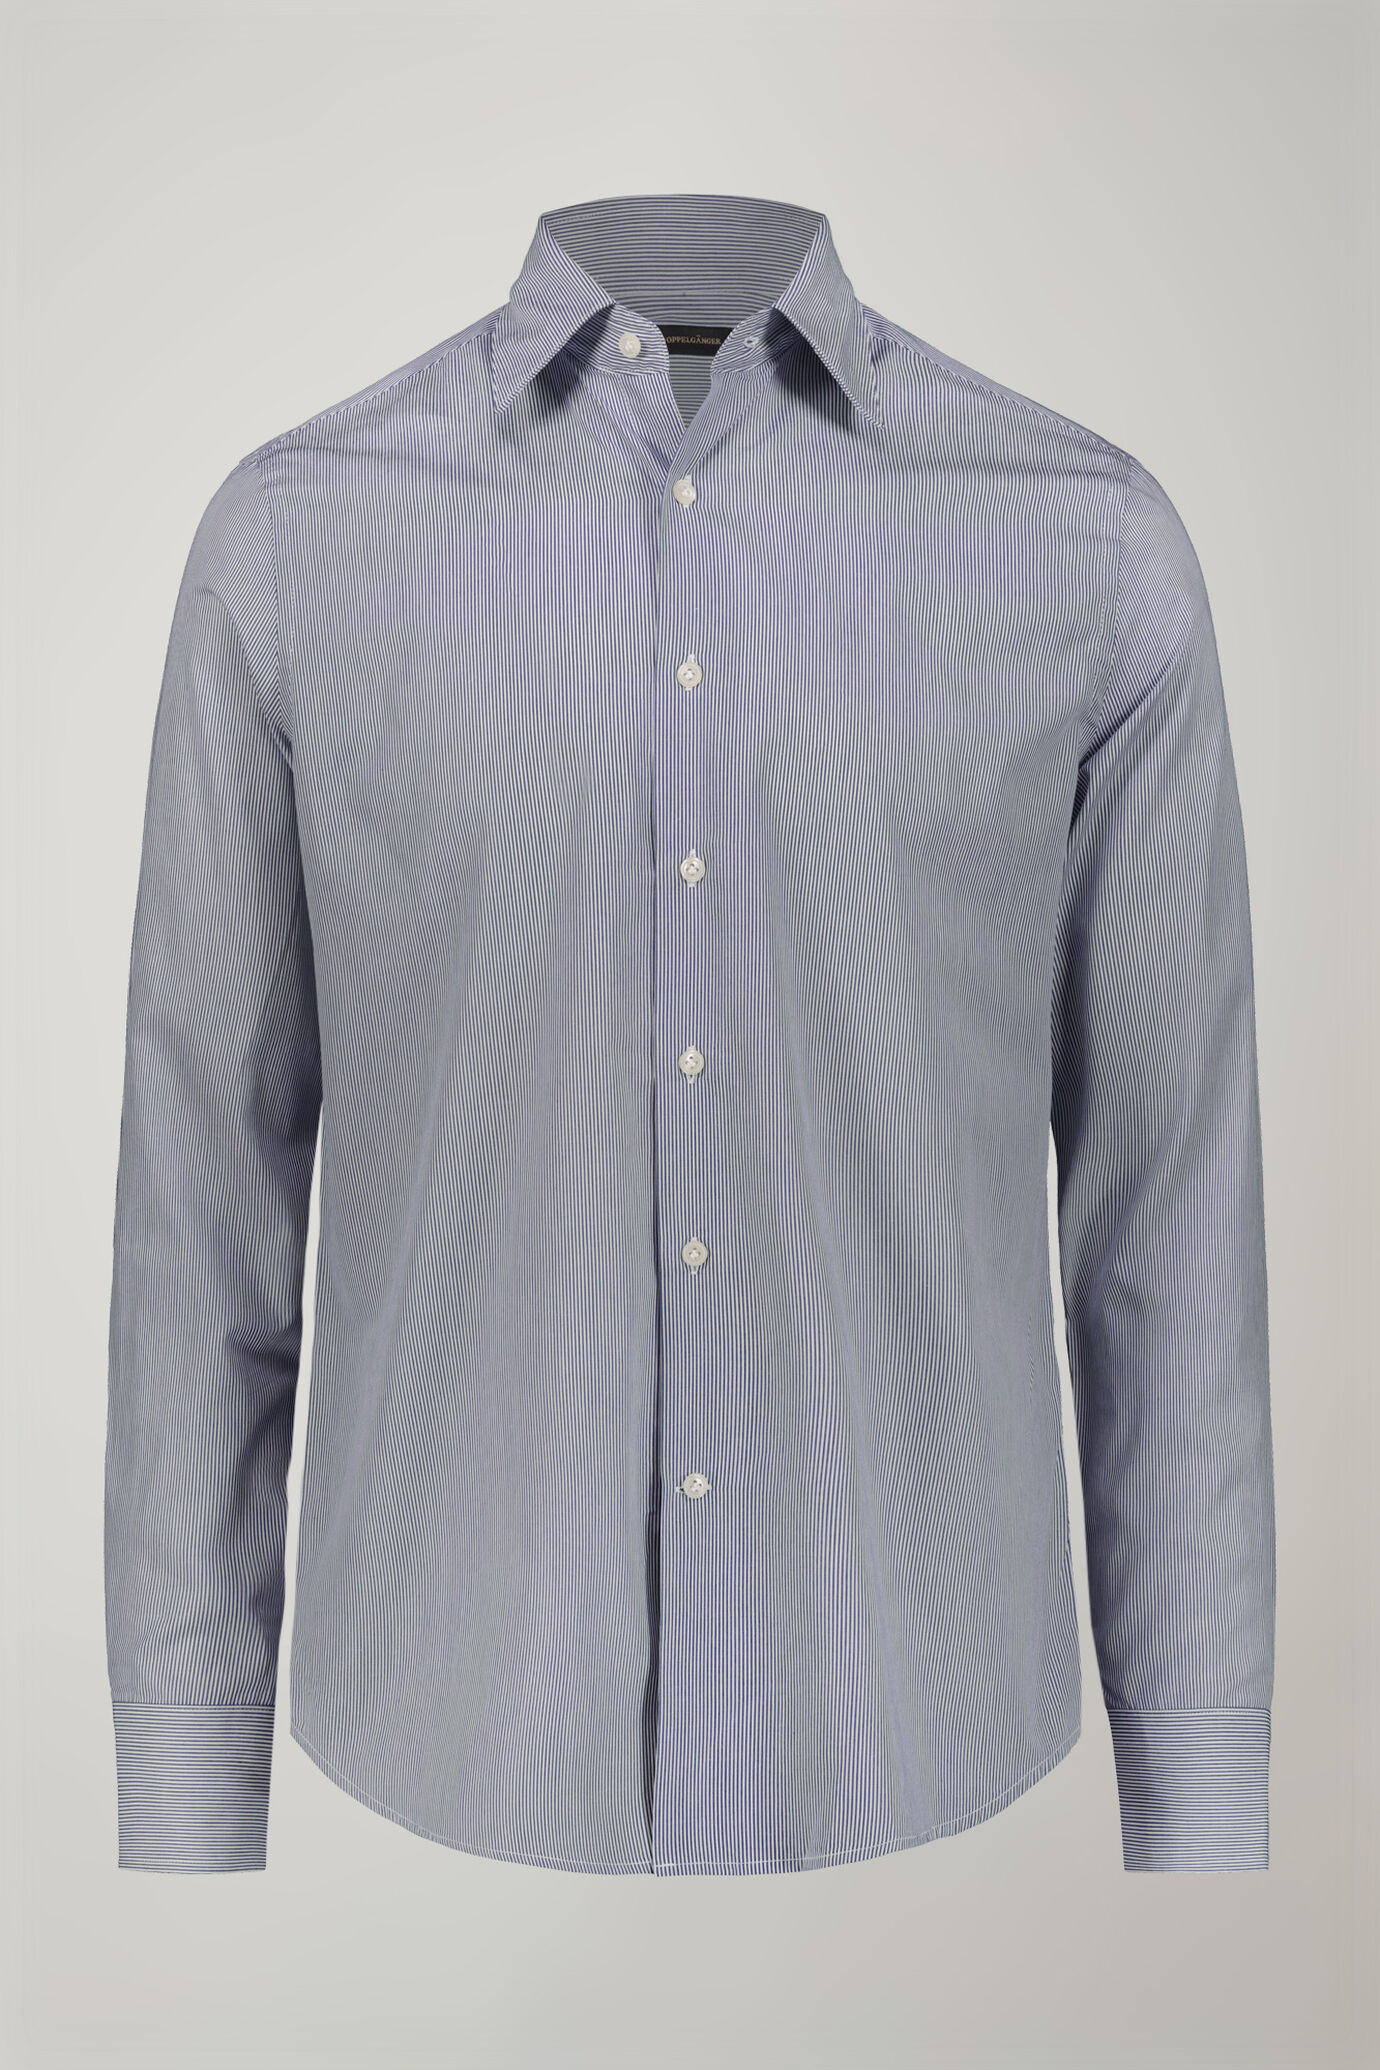 Camicia uomo collo classico 100% cotone tessuto tinto filo a righe regular fit image number 5